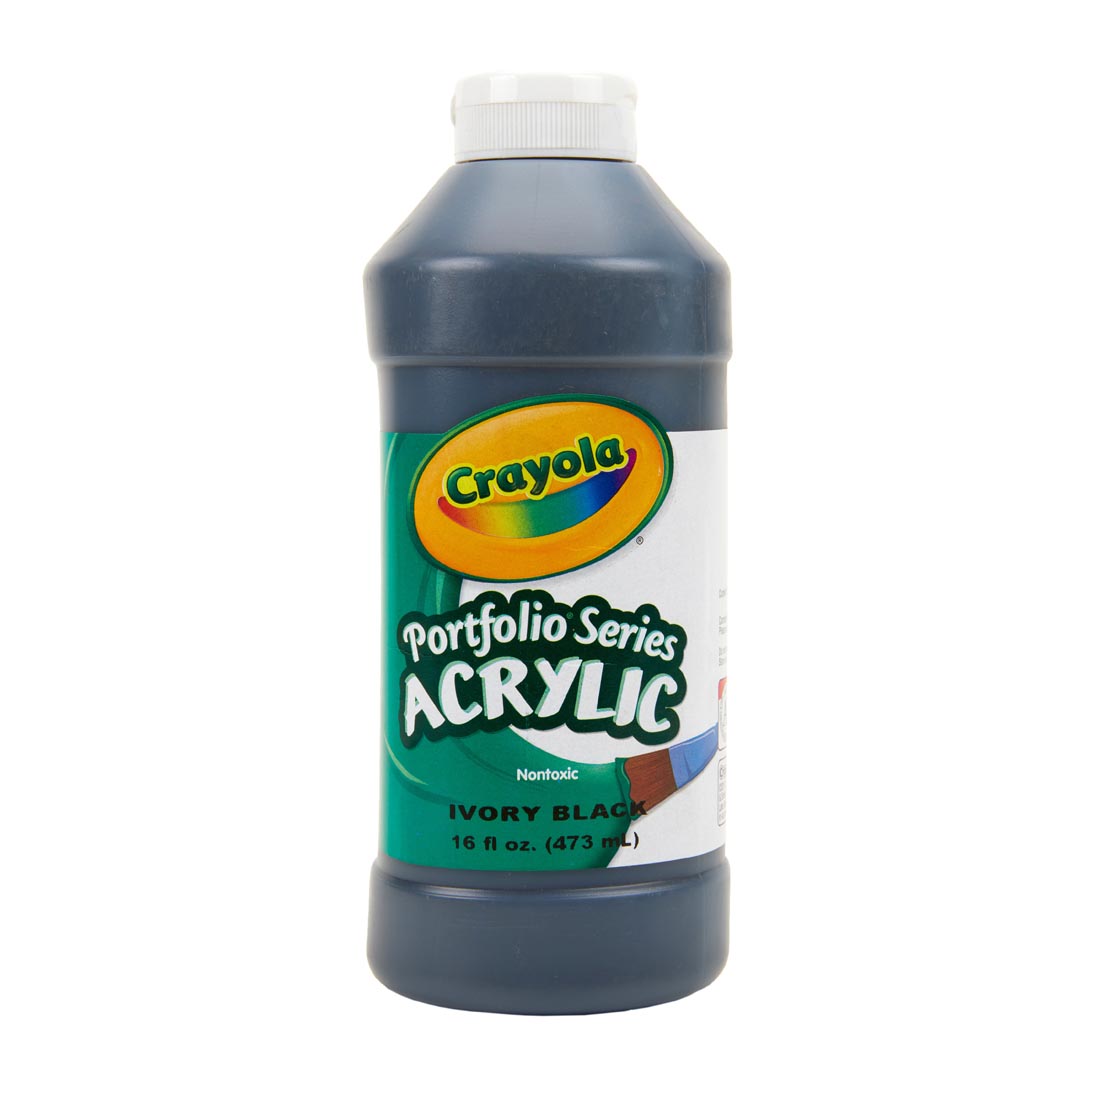 Bottle of Ivory Black Crayola Portfolio Series Acrylic Paint